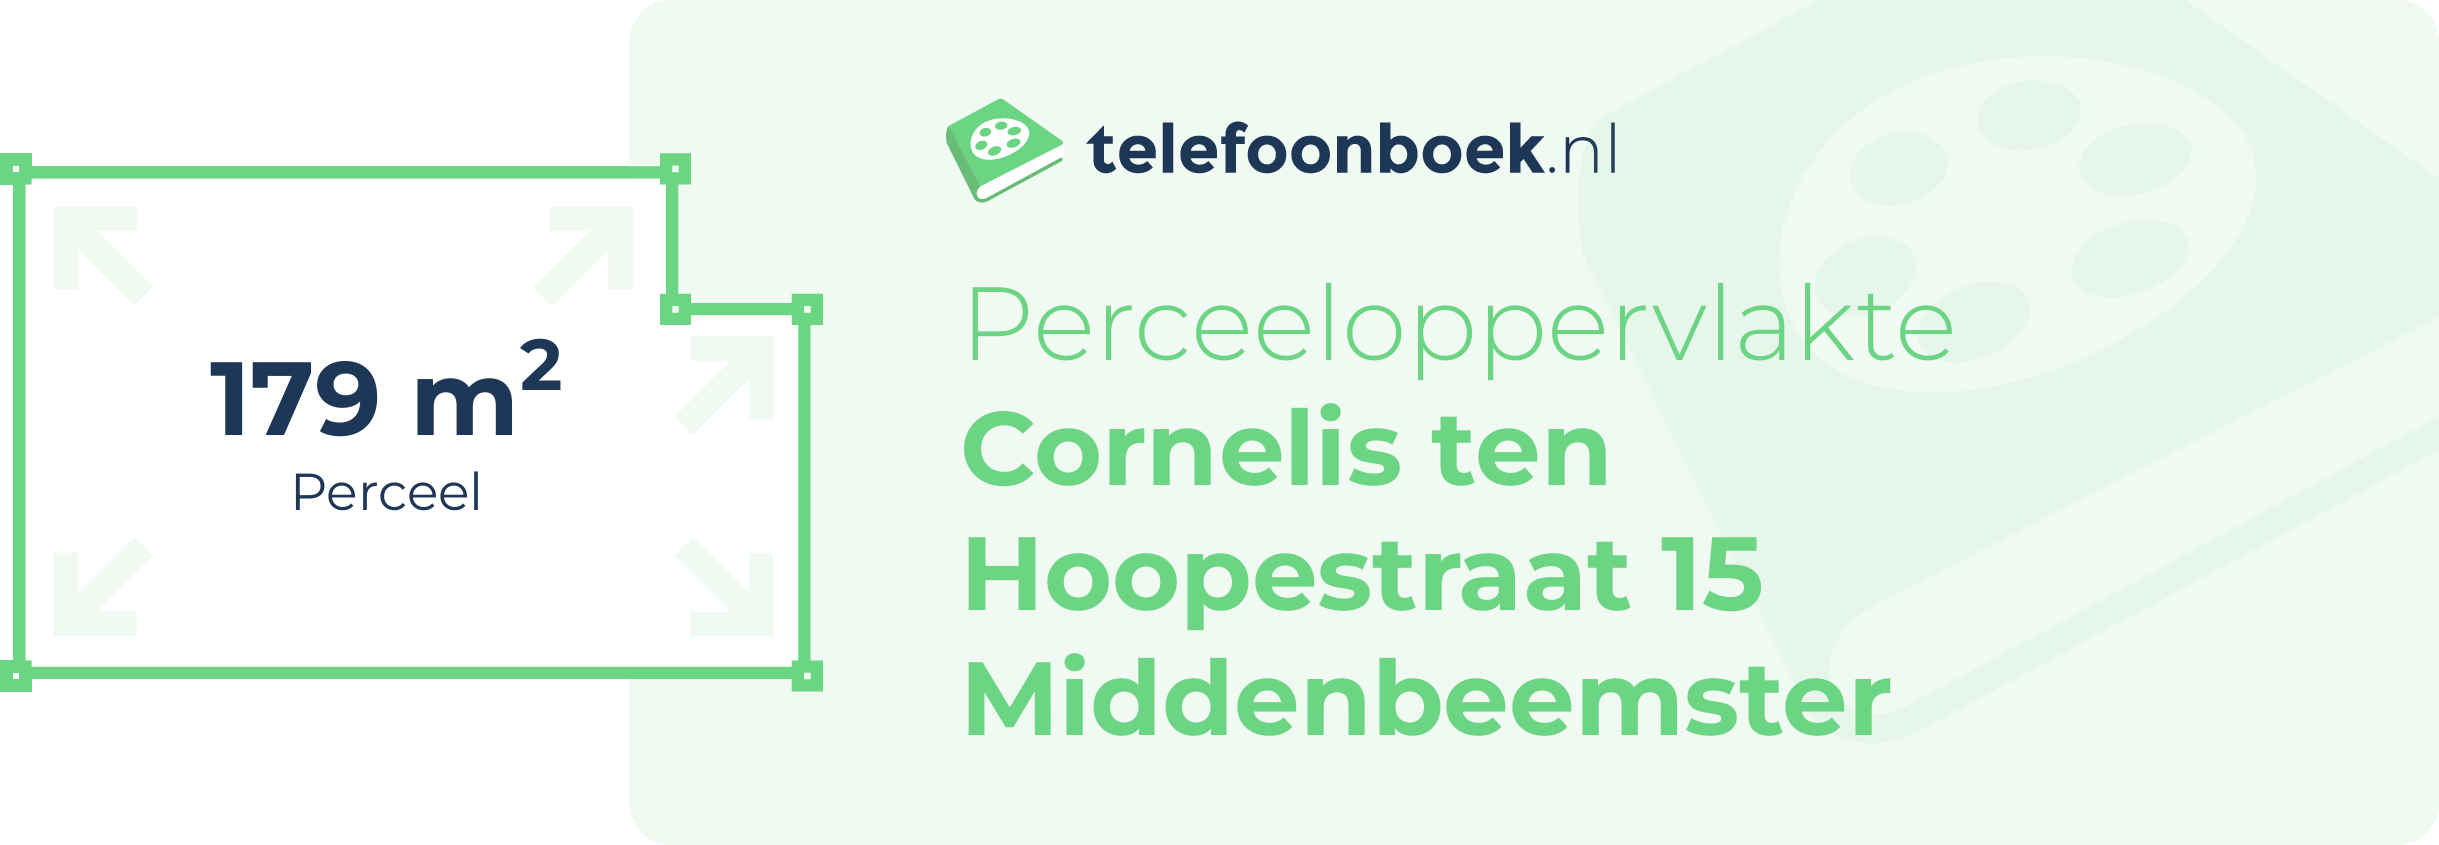 Perceeloppervlakte Cornelis Ten Hoopestraat 15 Middenbeemster